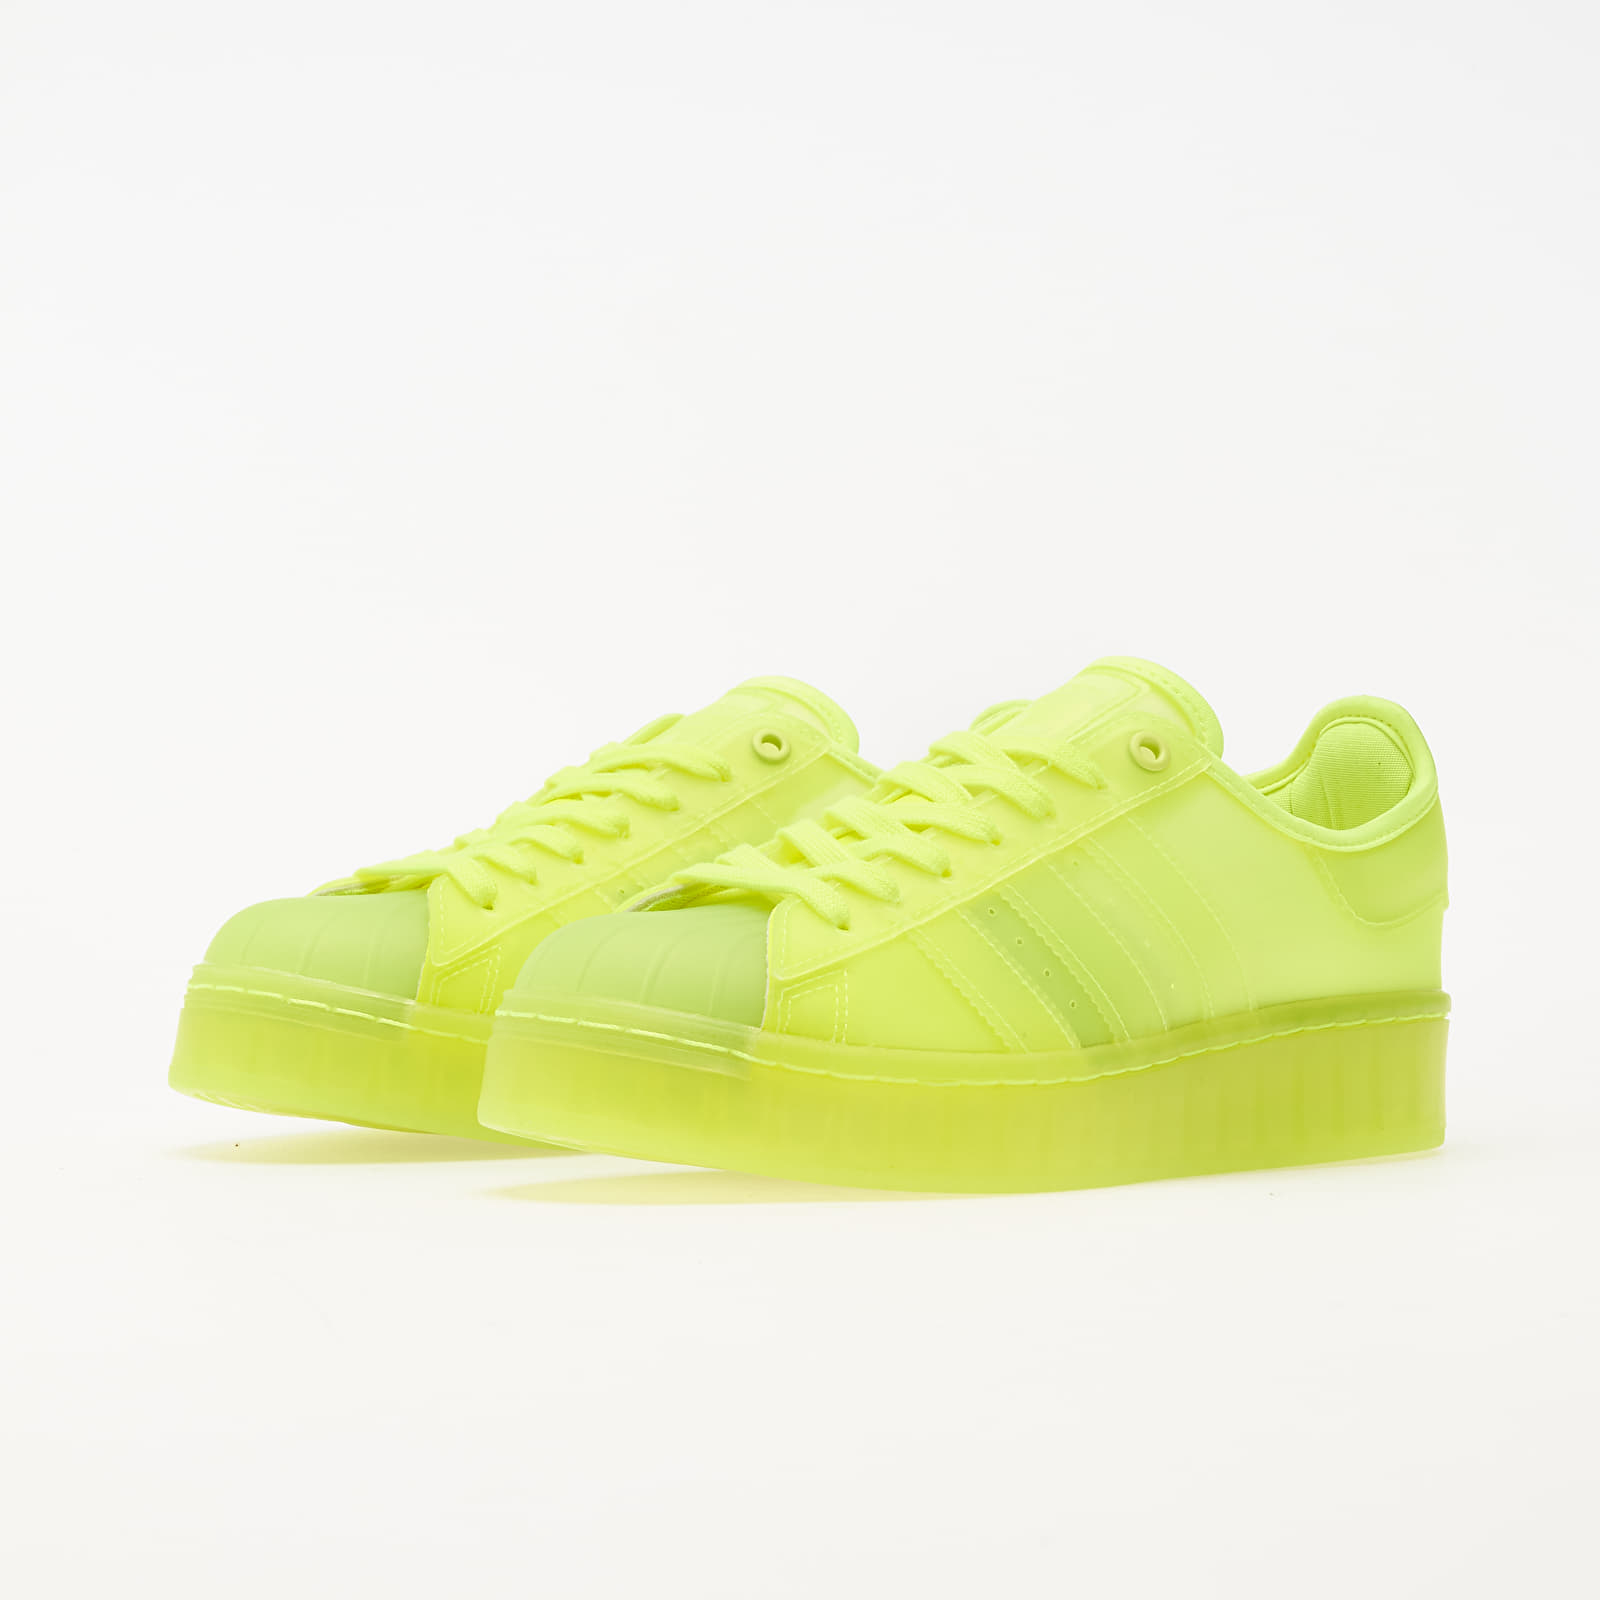 White Superstar Solar Footshop adidas Solar Schuhe Ftw und Yellow/ Yellow/ W Damen Jelly Sneaker |